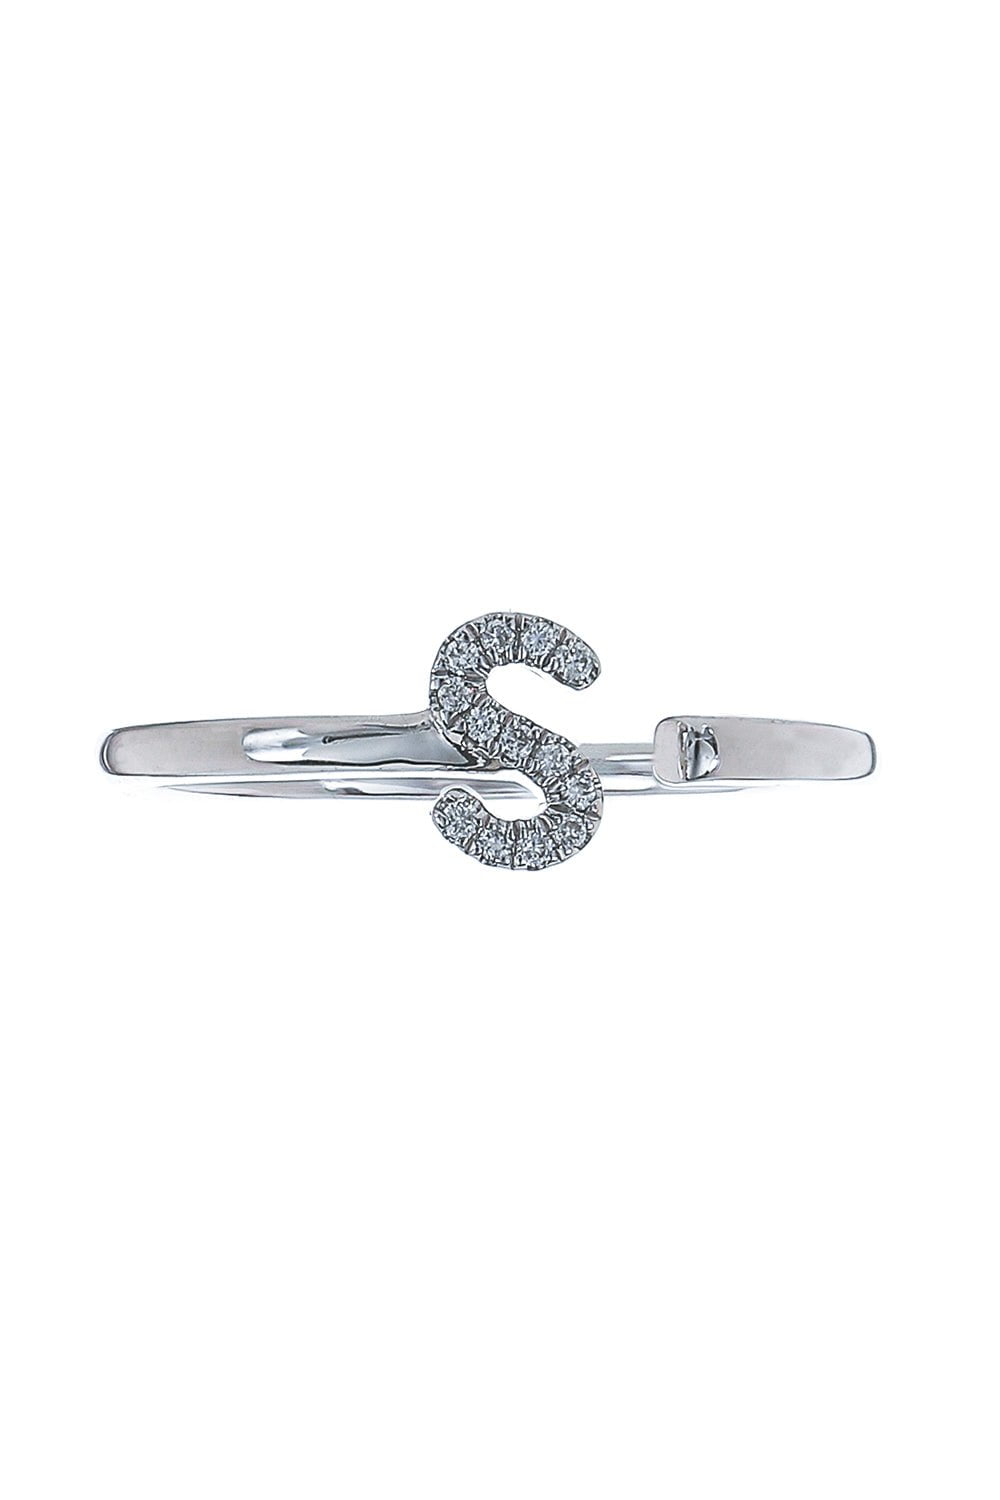 DANA REBECCA DESIGNS-S Diamond Single Initial Ring-WHITE GOLD